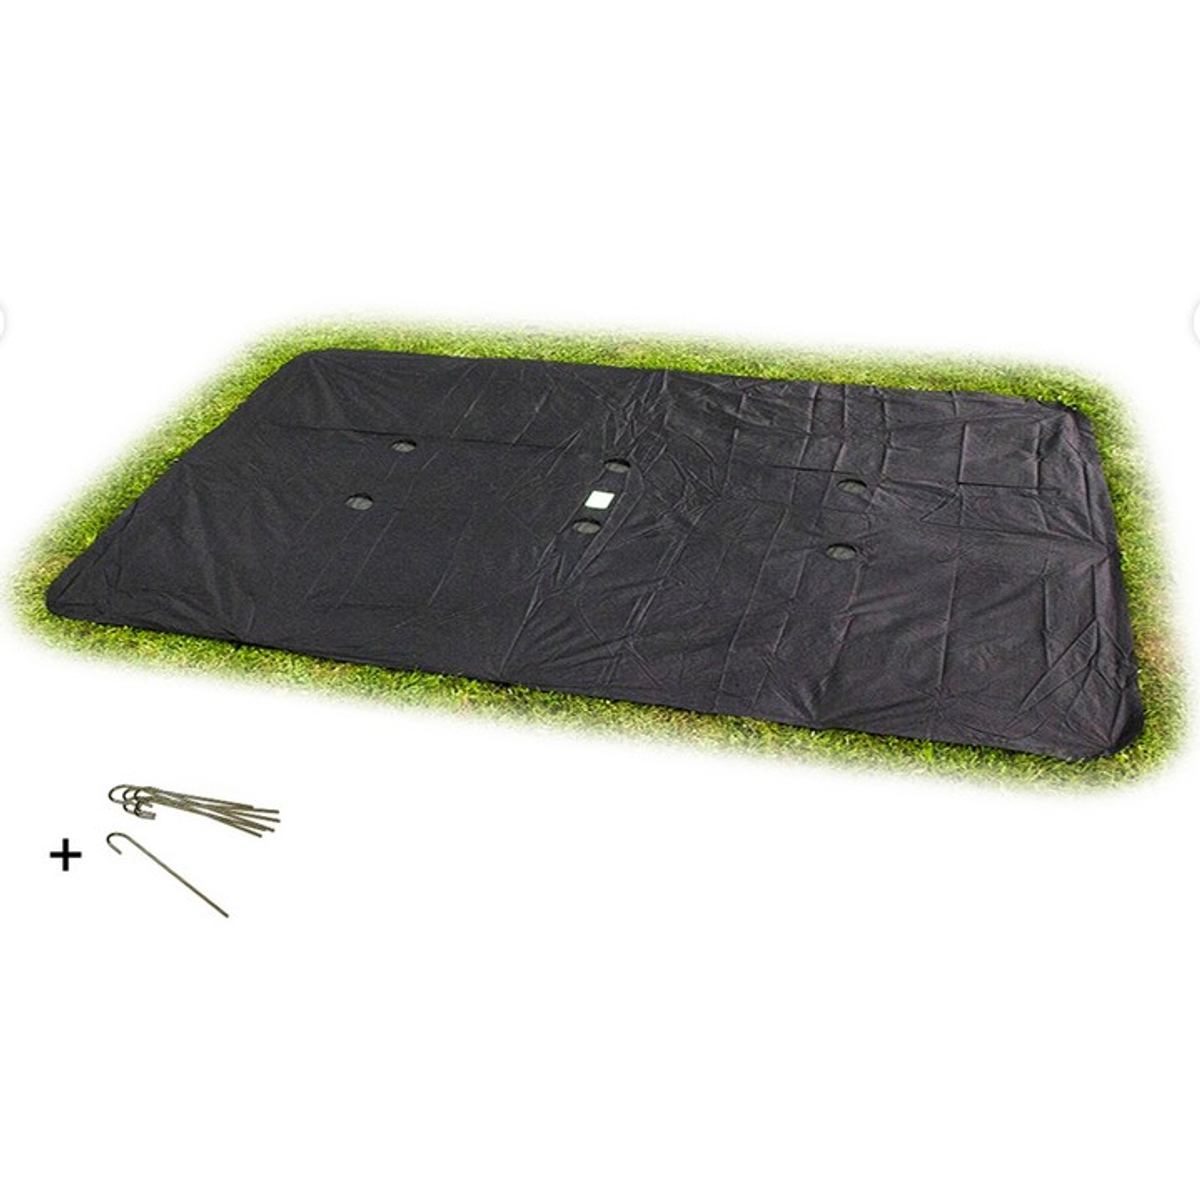 Housse de protection rectangulaire pour trampoline enterré niveau sol EXIT 275x458cm